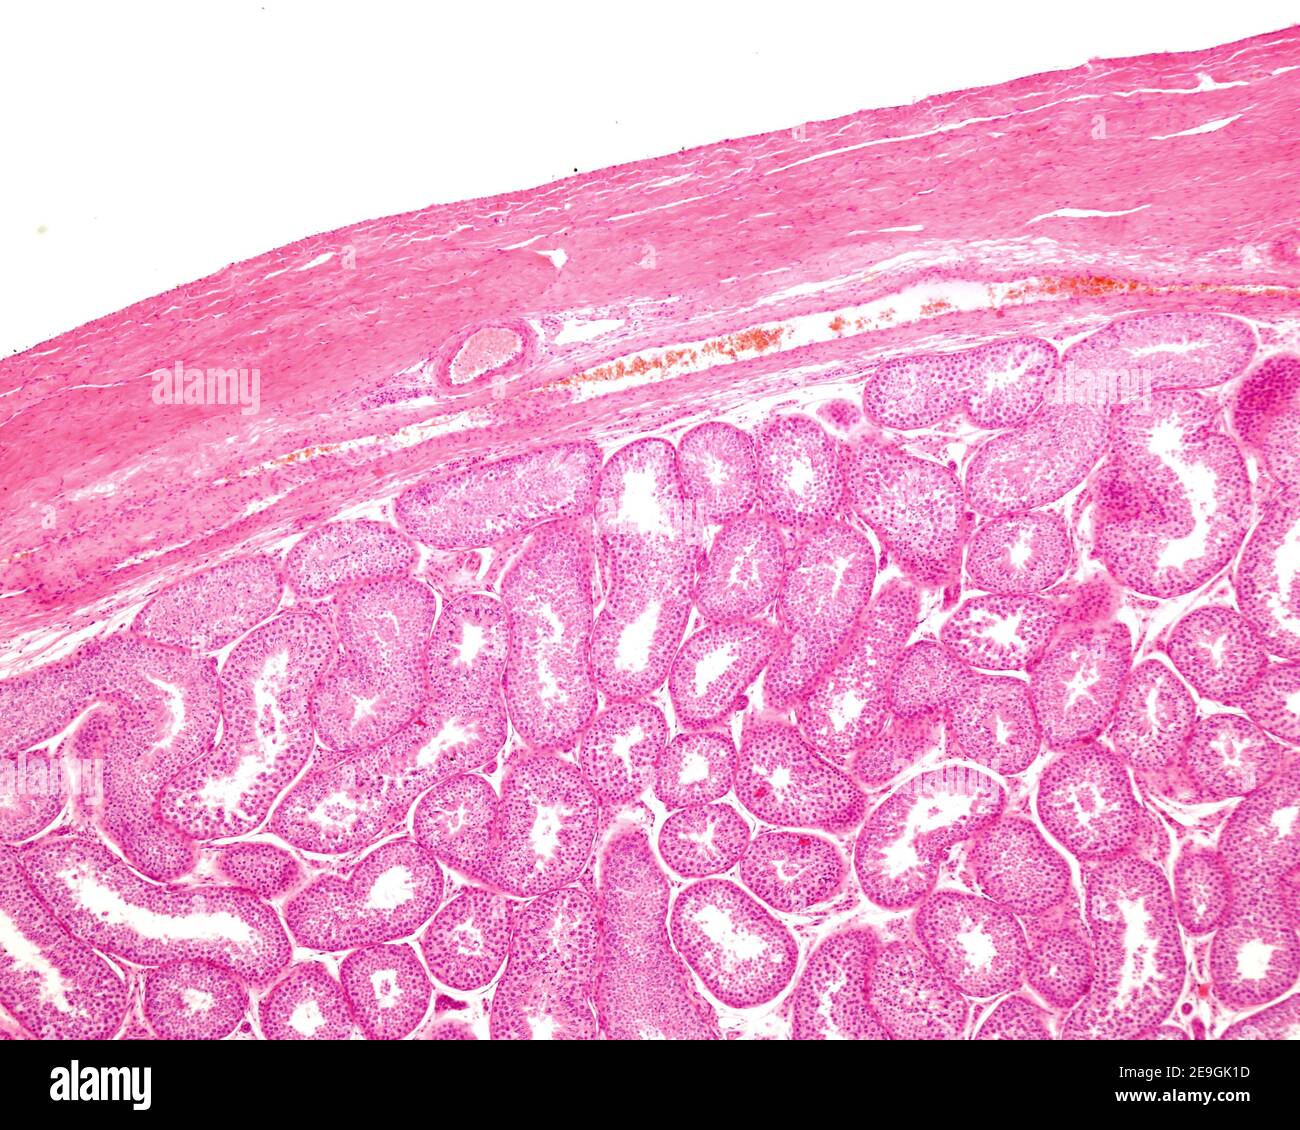 Mikroskop-Lichtmikroskop-Mikrograph, der die Tunica alboginea eines menschlichen Hoden zeigt. Unterhalb der äußeren Faserschicht befindet sich die Tunica vasculosa und das Seminif Stockfoto